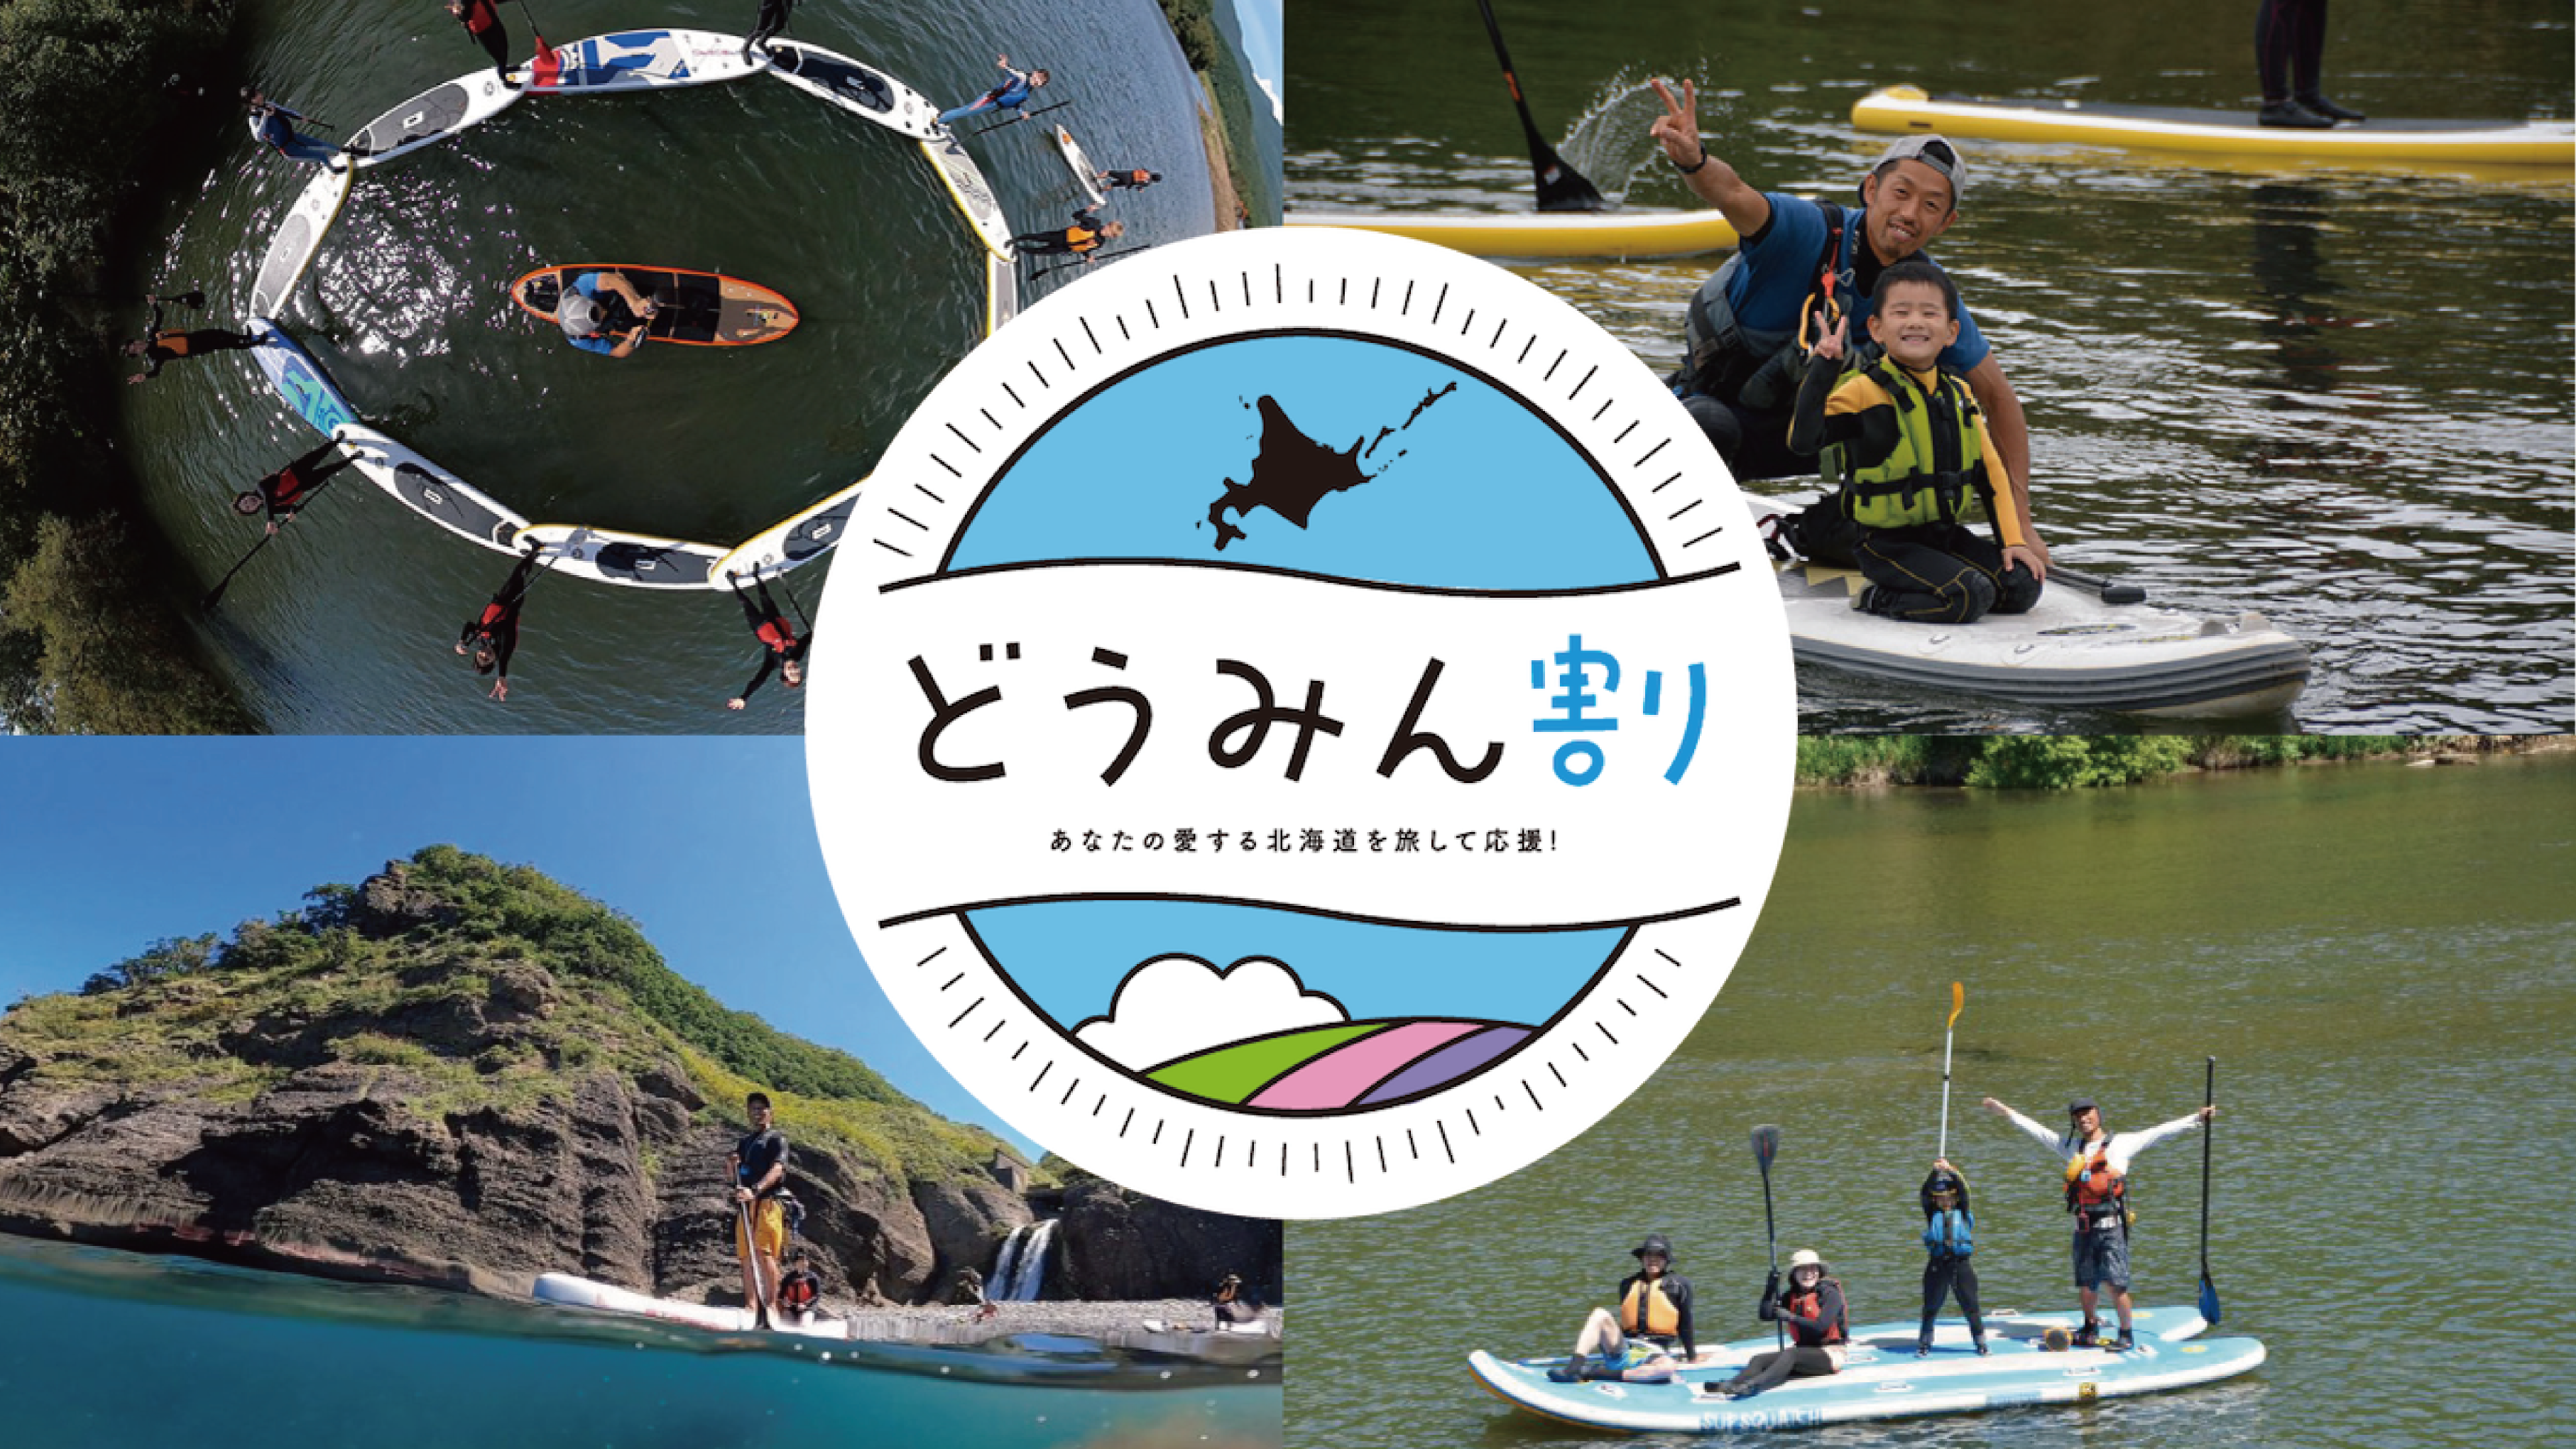 SUP nisekoで夏休みも【どうみん割り】【県民割り】でSUPを楽しみましょう！！のアイキャッチ画像